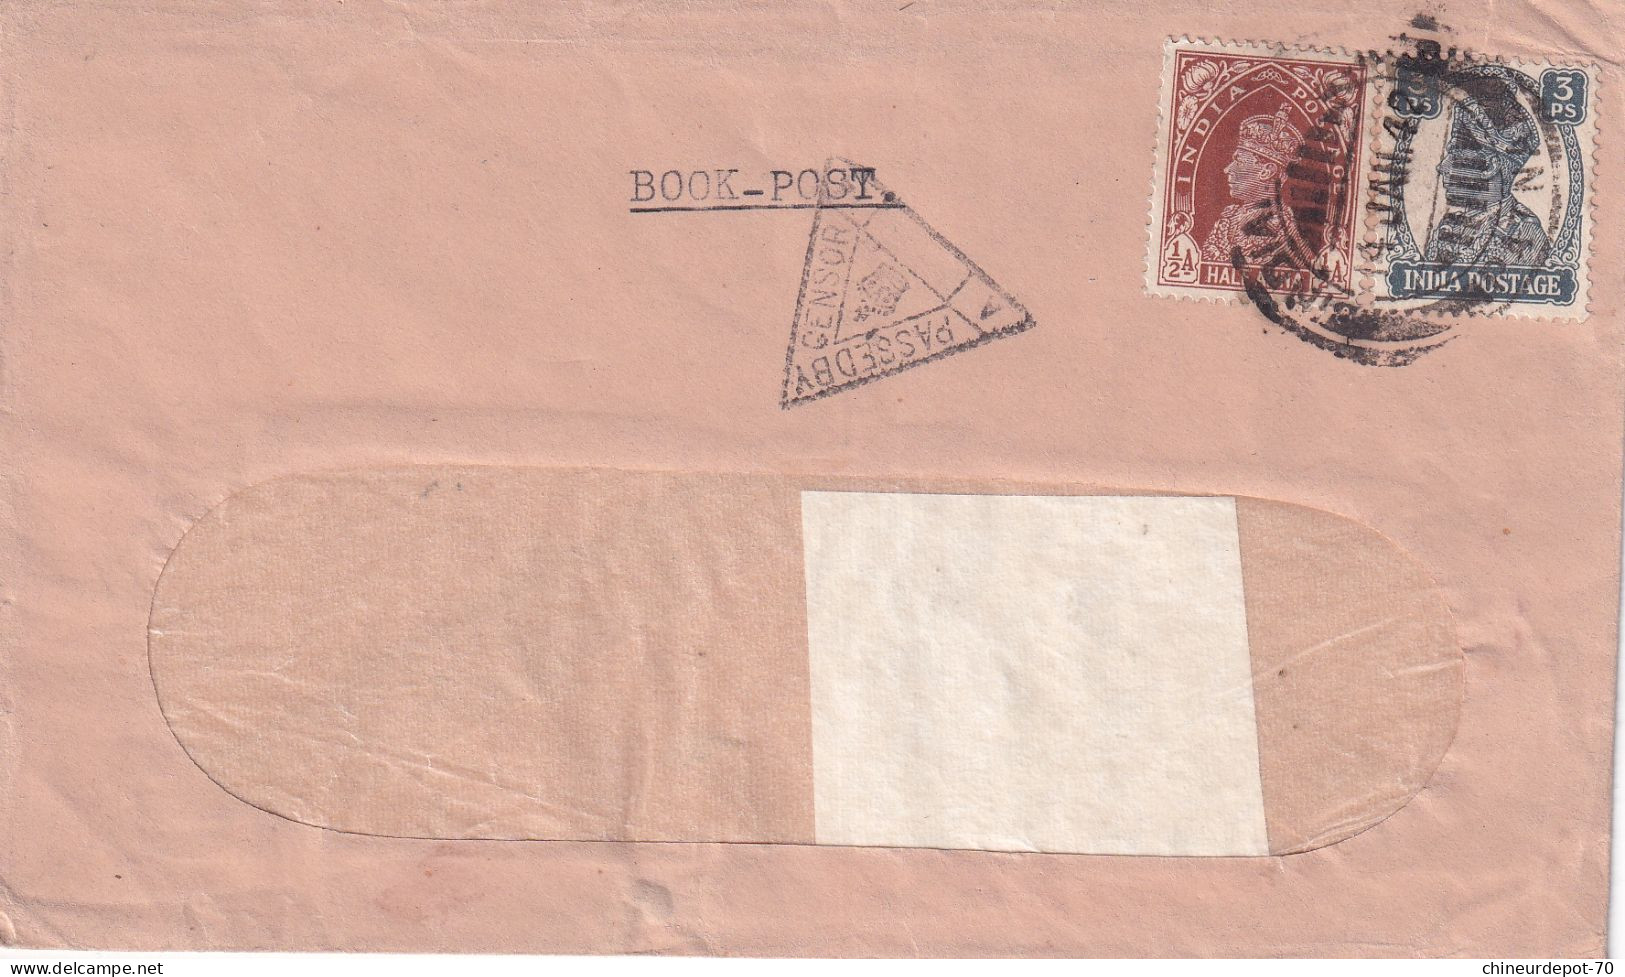 LIVRE-POST PASSÉ PAR 3 AFFRANCHISSEMENT INDLA INDLA POSTAGE Inde India 1942 Patna - Briefe